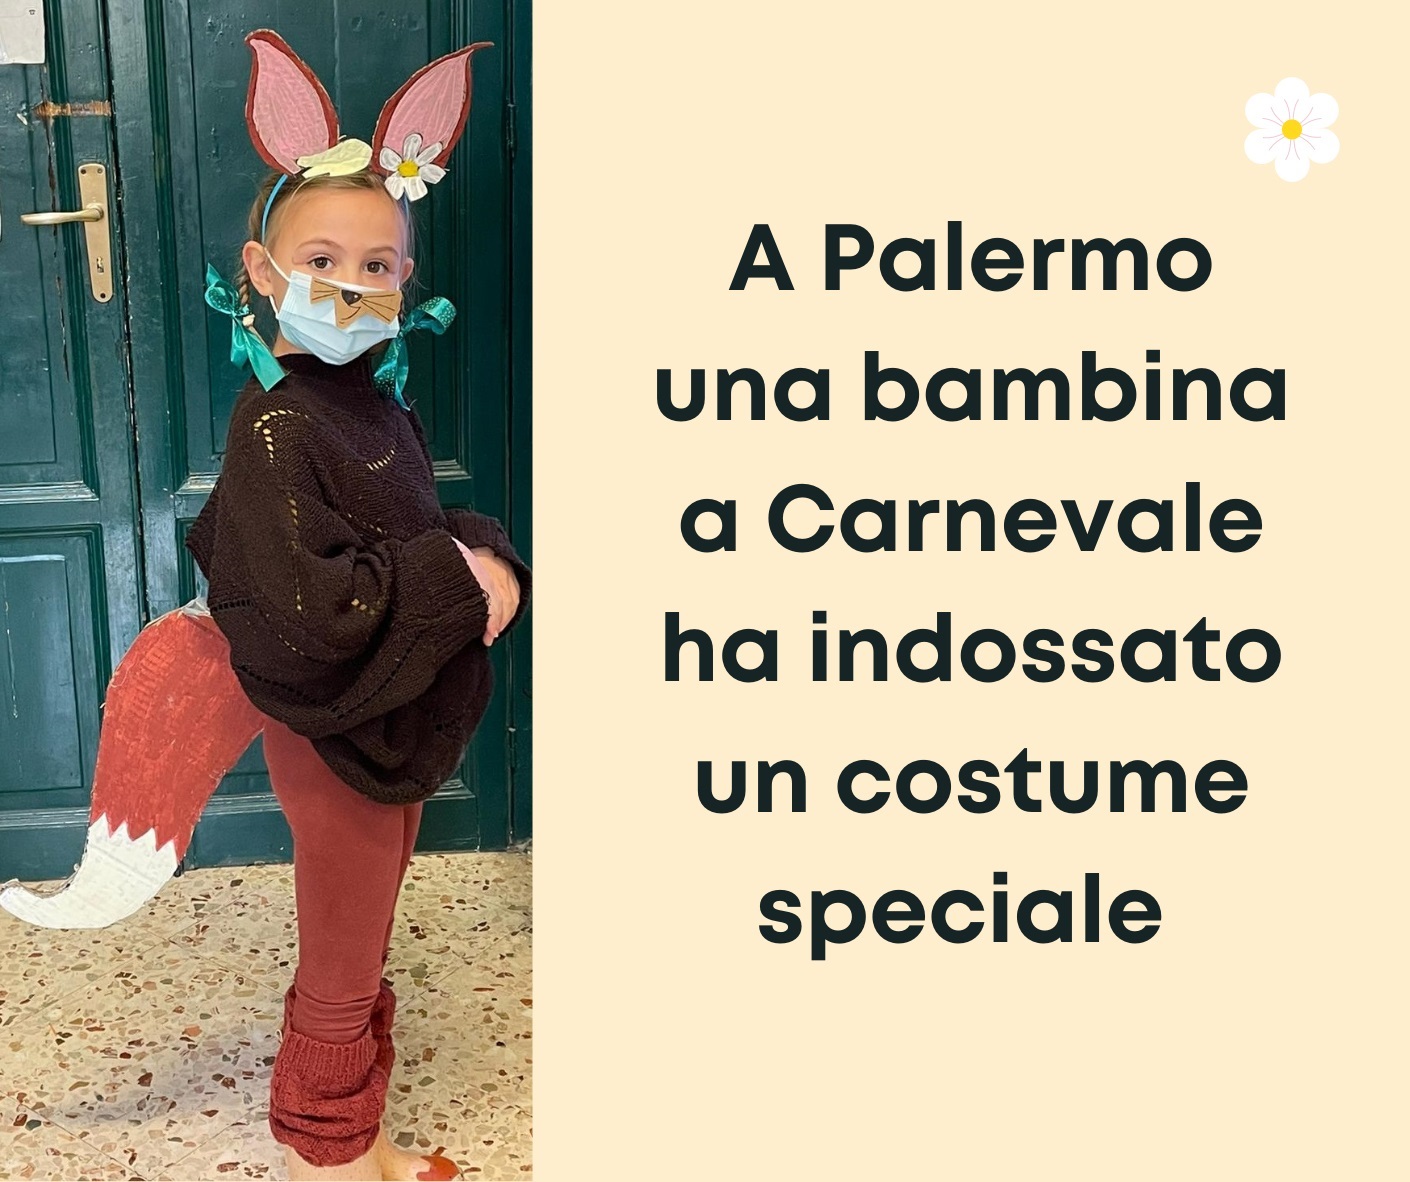 A Palermo una bambina a Carnevale ha indossato un costume speciale sito